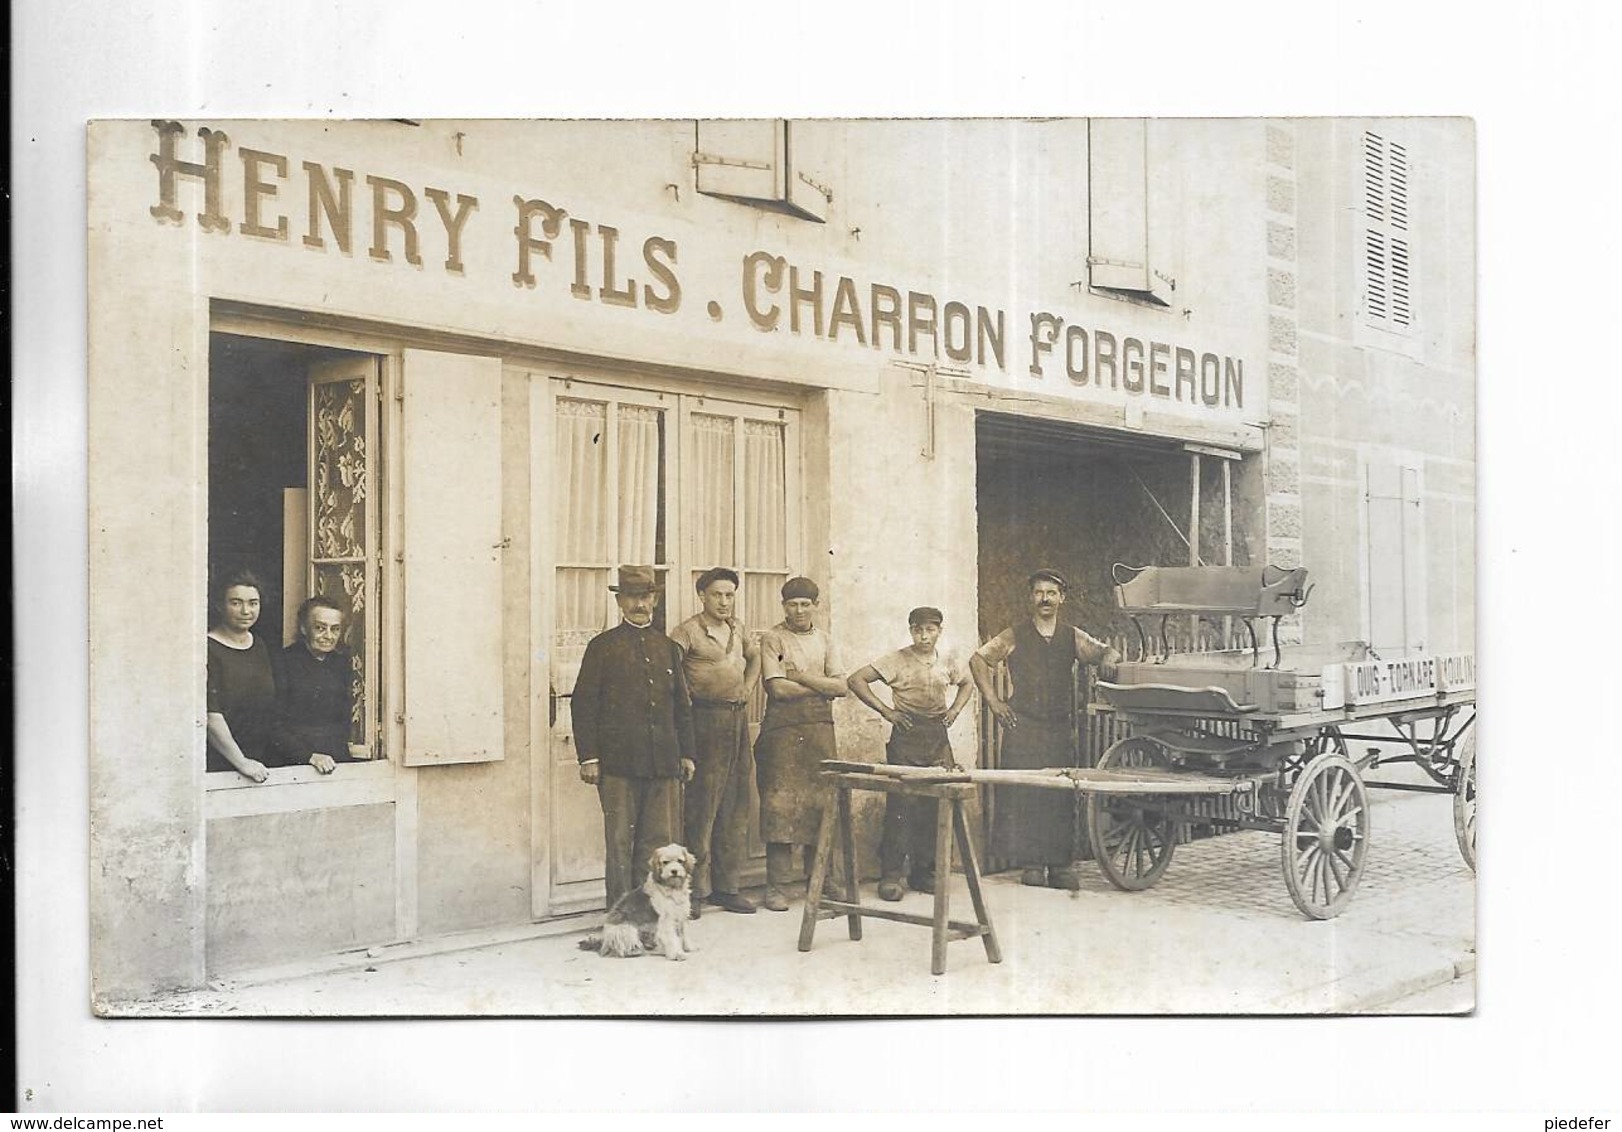 70 - GRAY - Carte-photo Non Titrée Mais Il S' Agit Bien De GRAY Rue Carnot. HENRY FILS. CHARRON FORGERON - Gray